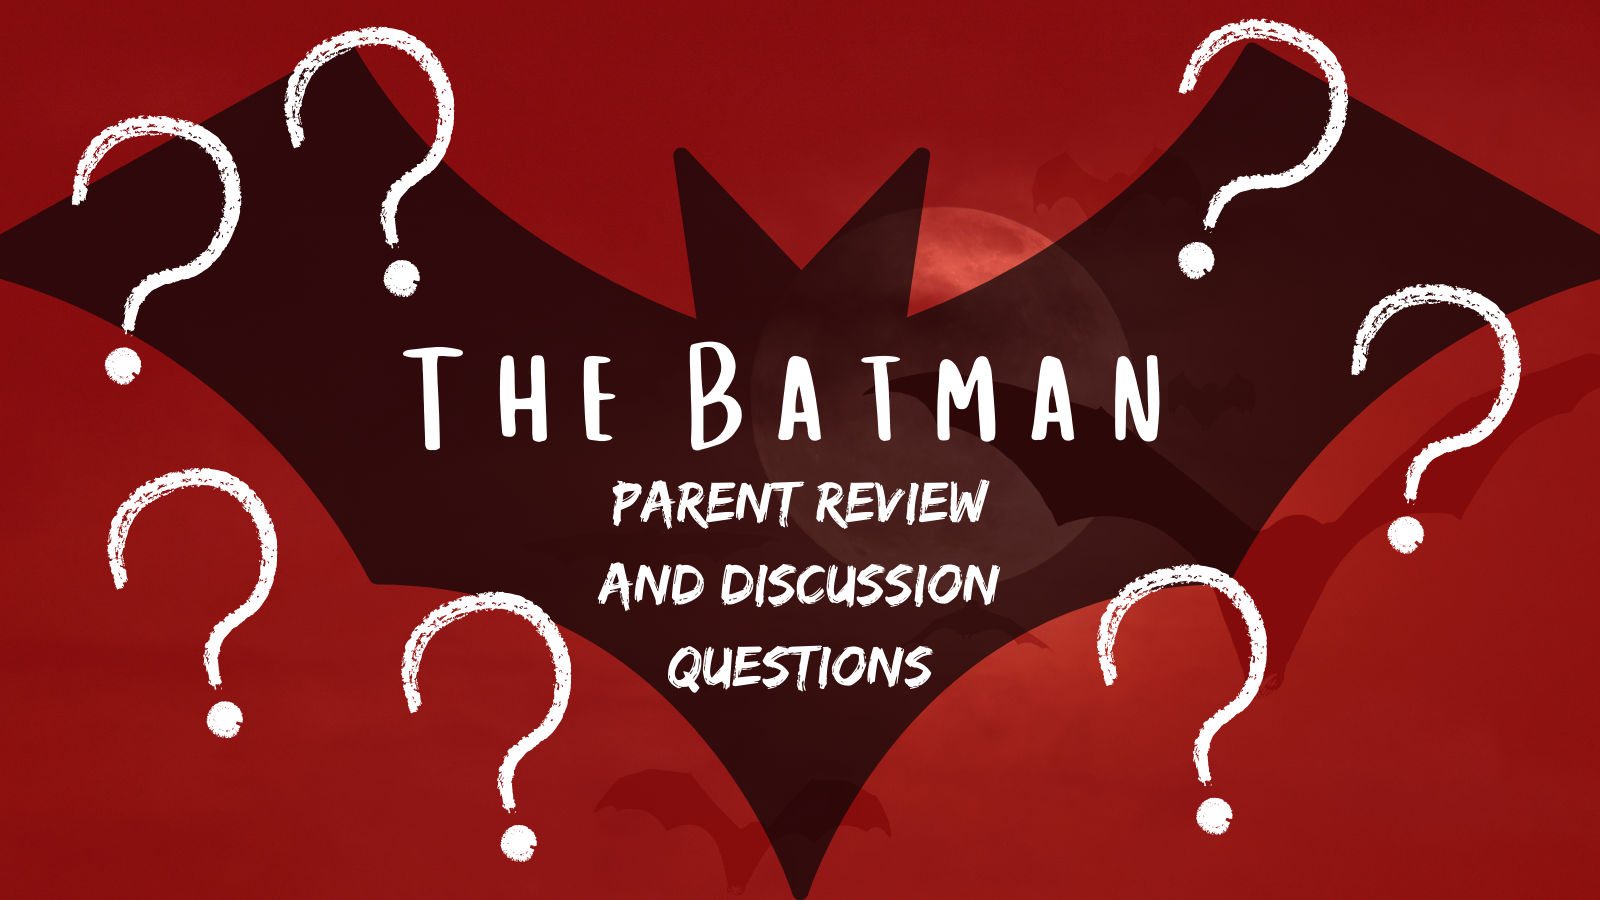 The Batman Parent Review